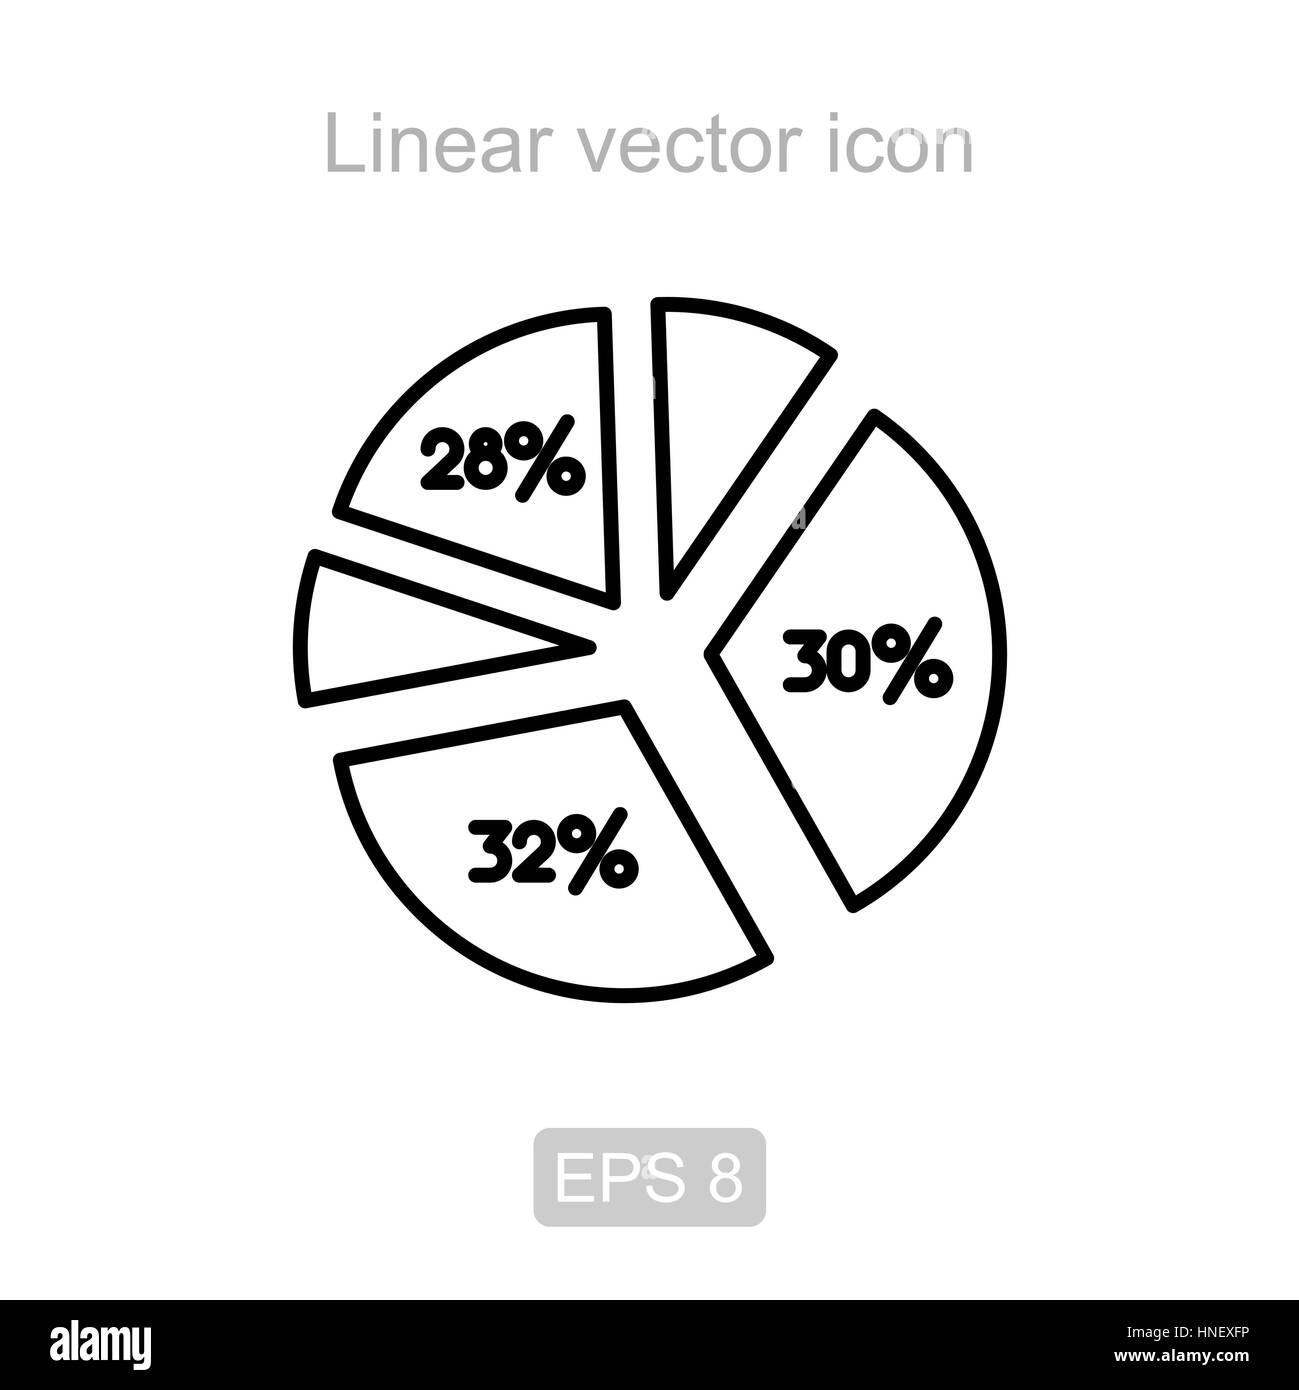 Pie graph. Linear vector icon. Stock Vector